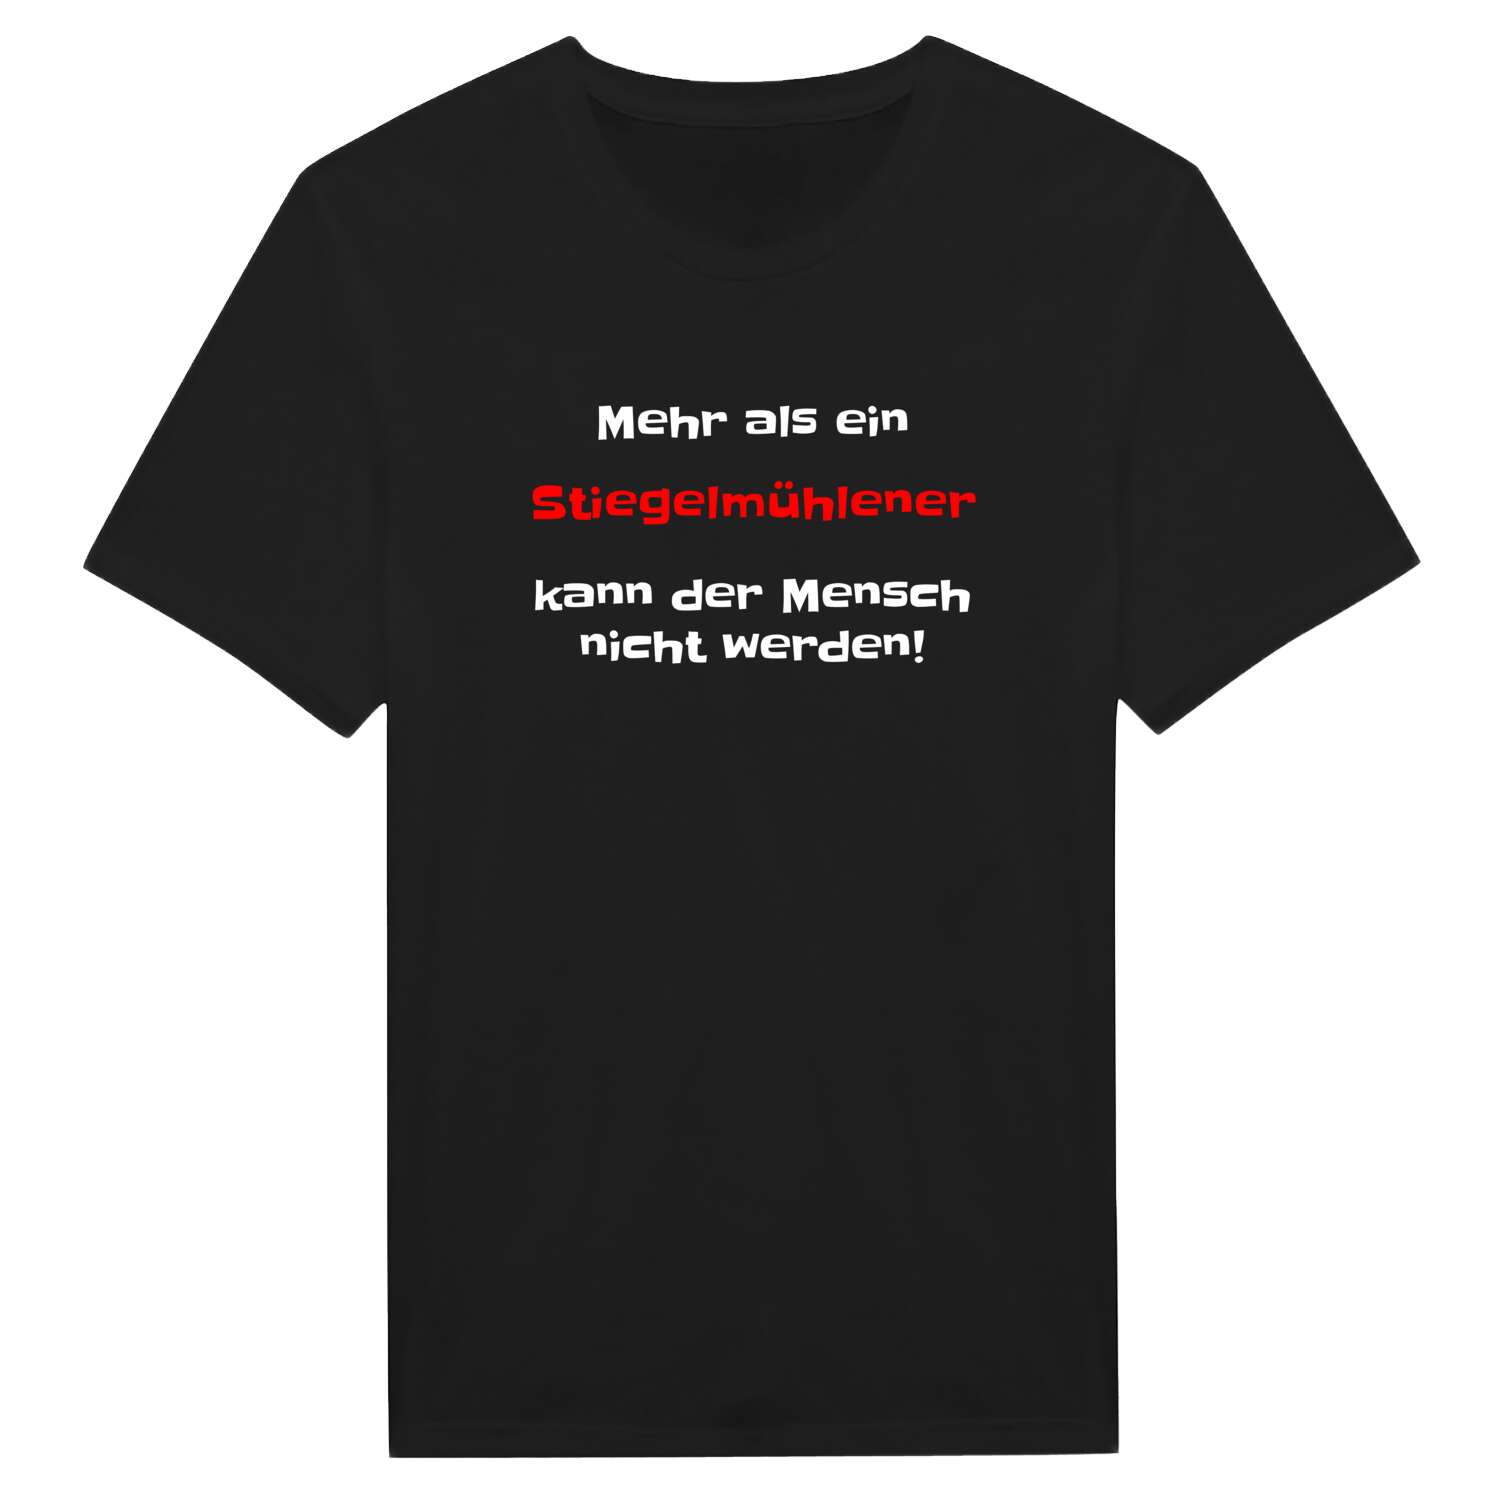 Stiegelmühle T-Shirt »Mehr als ein«